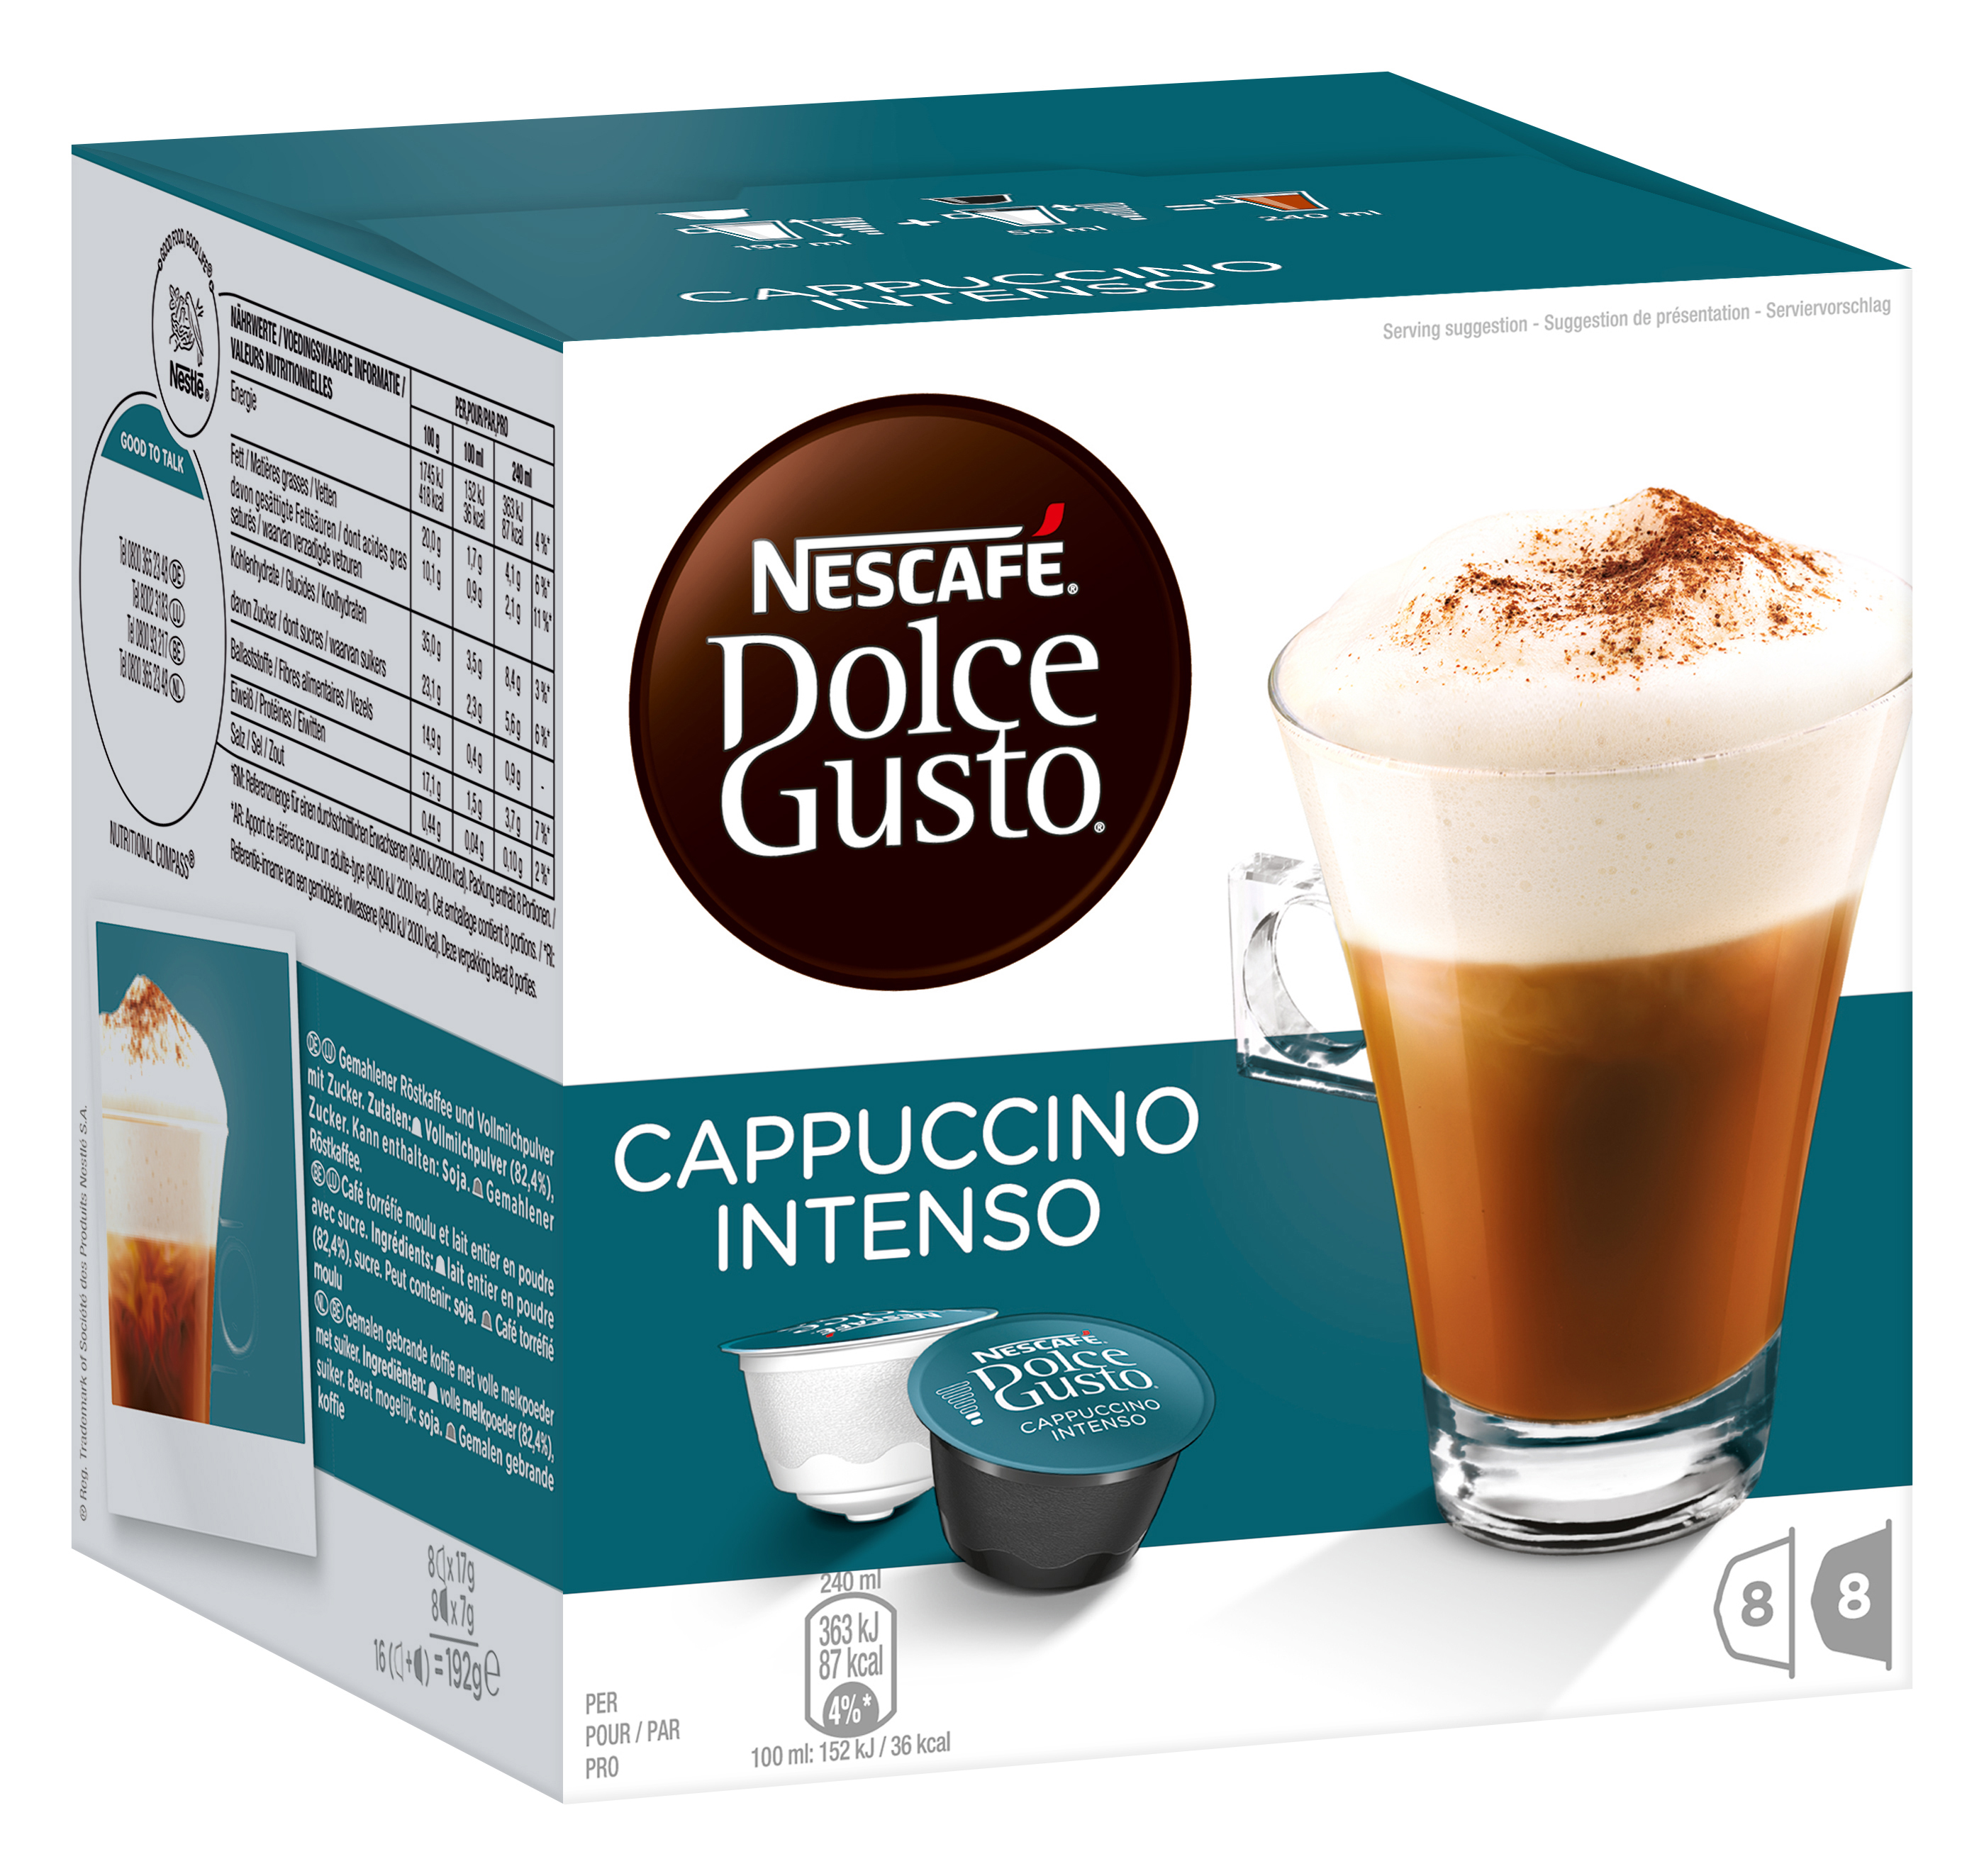 (Kapseltechnologie) Intenso Cappucchino Kaffeekapseln DOLCE GUSTO